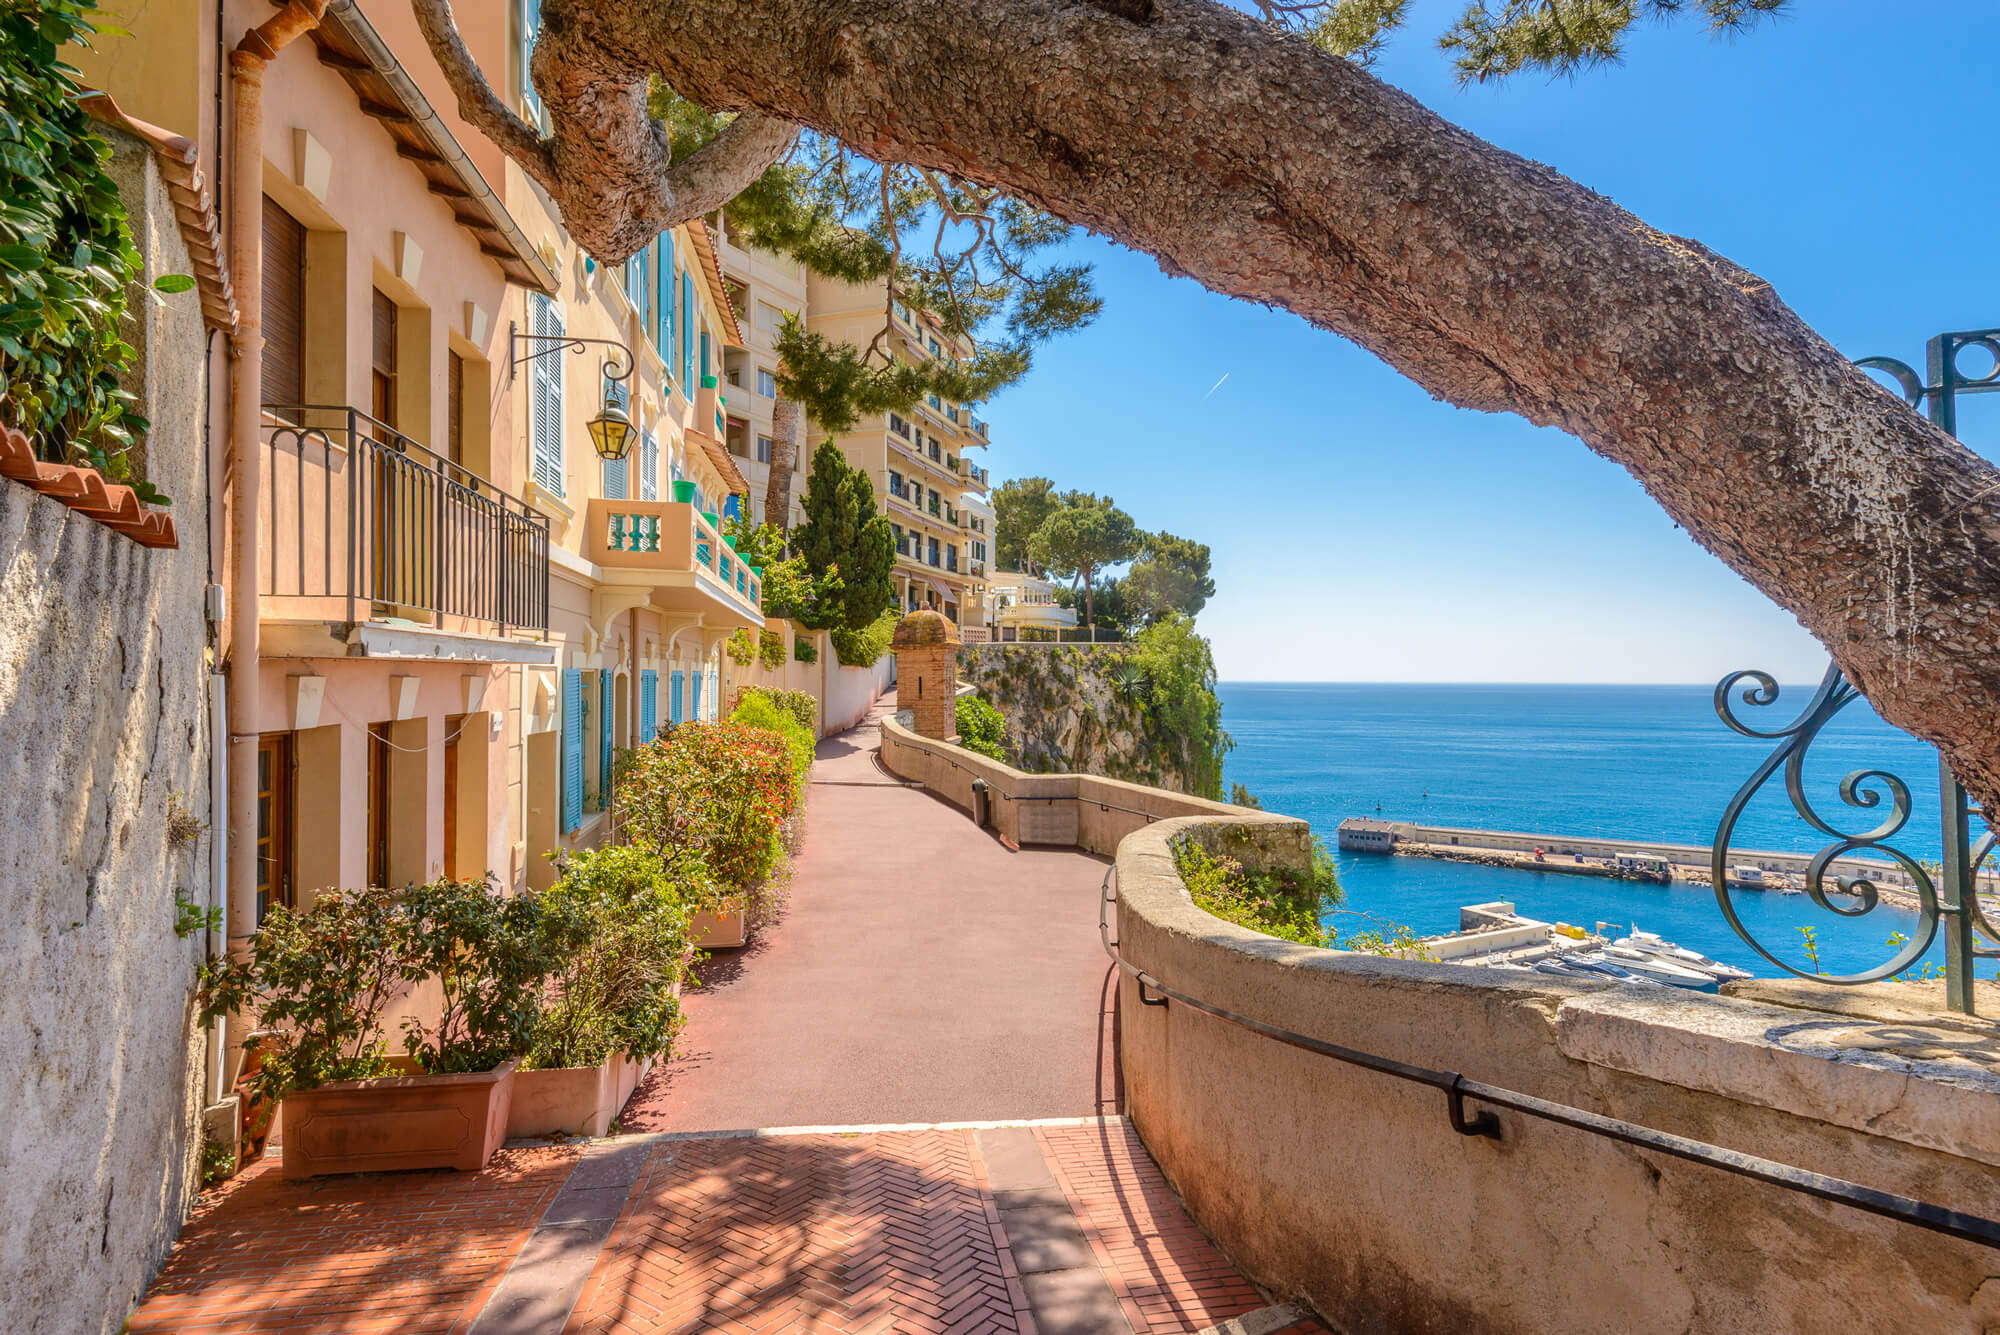 Discover Monaco and the French Riviera: Monaco Events